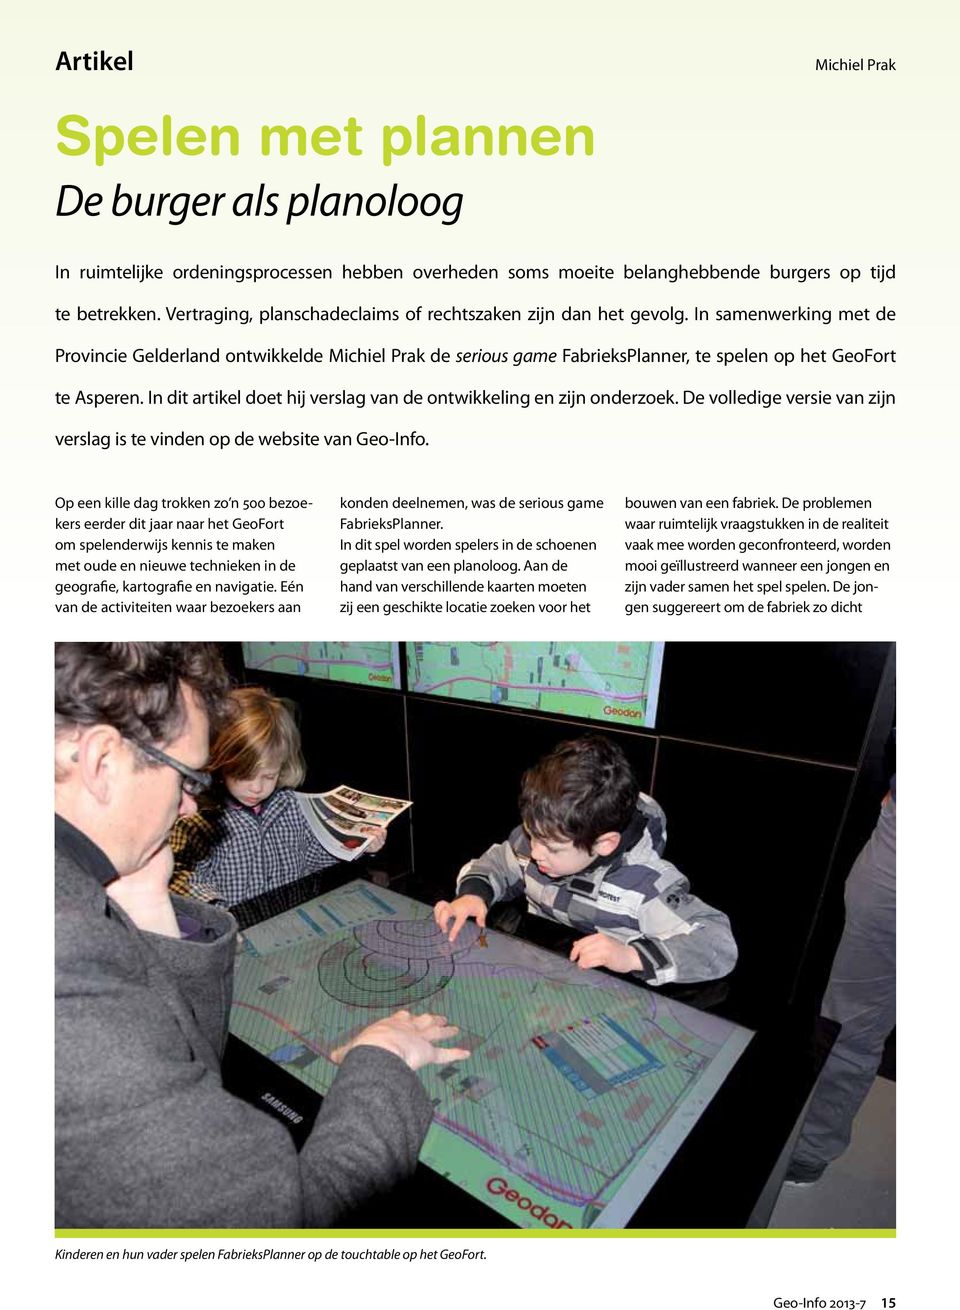 In samenwerking met de Provincie Gelderland ontwikkelde Michiel Prak de serious game FabrieksPlanner, te spelen op het GeoFort te Asperen.